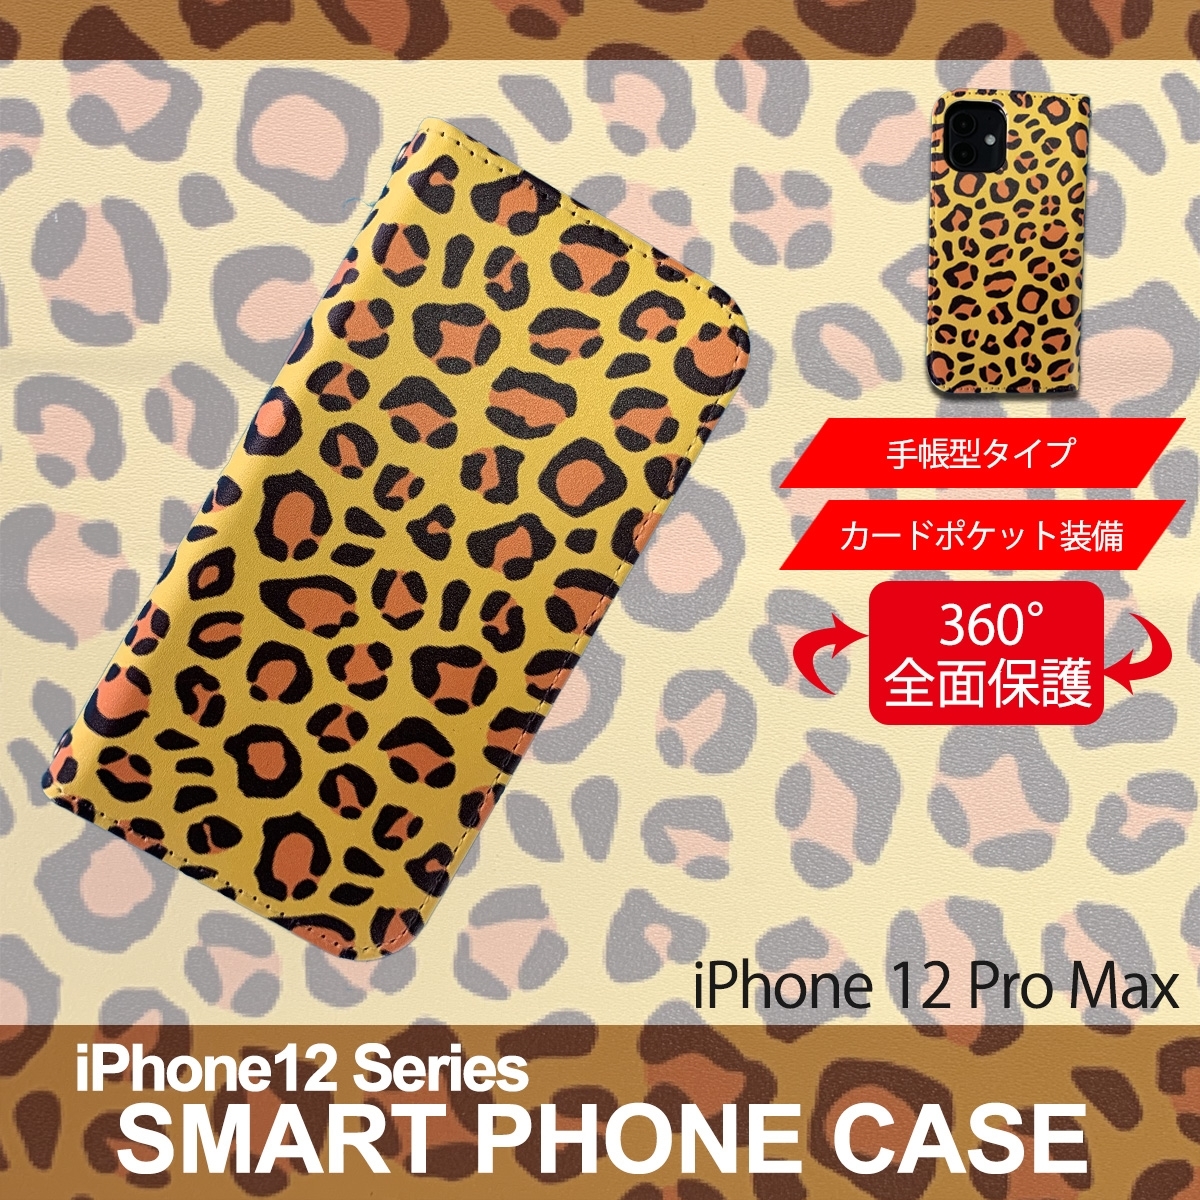 1】 iPhone12 Pro Max 手帳型 アイフォン ケース スマホカバー PVC レザー アニマル柄 ヒョウ柄 イエロー